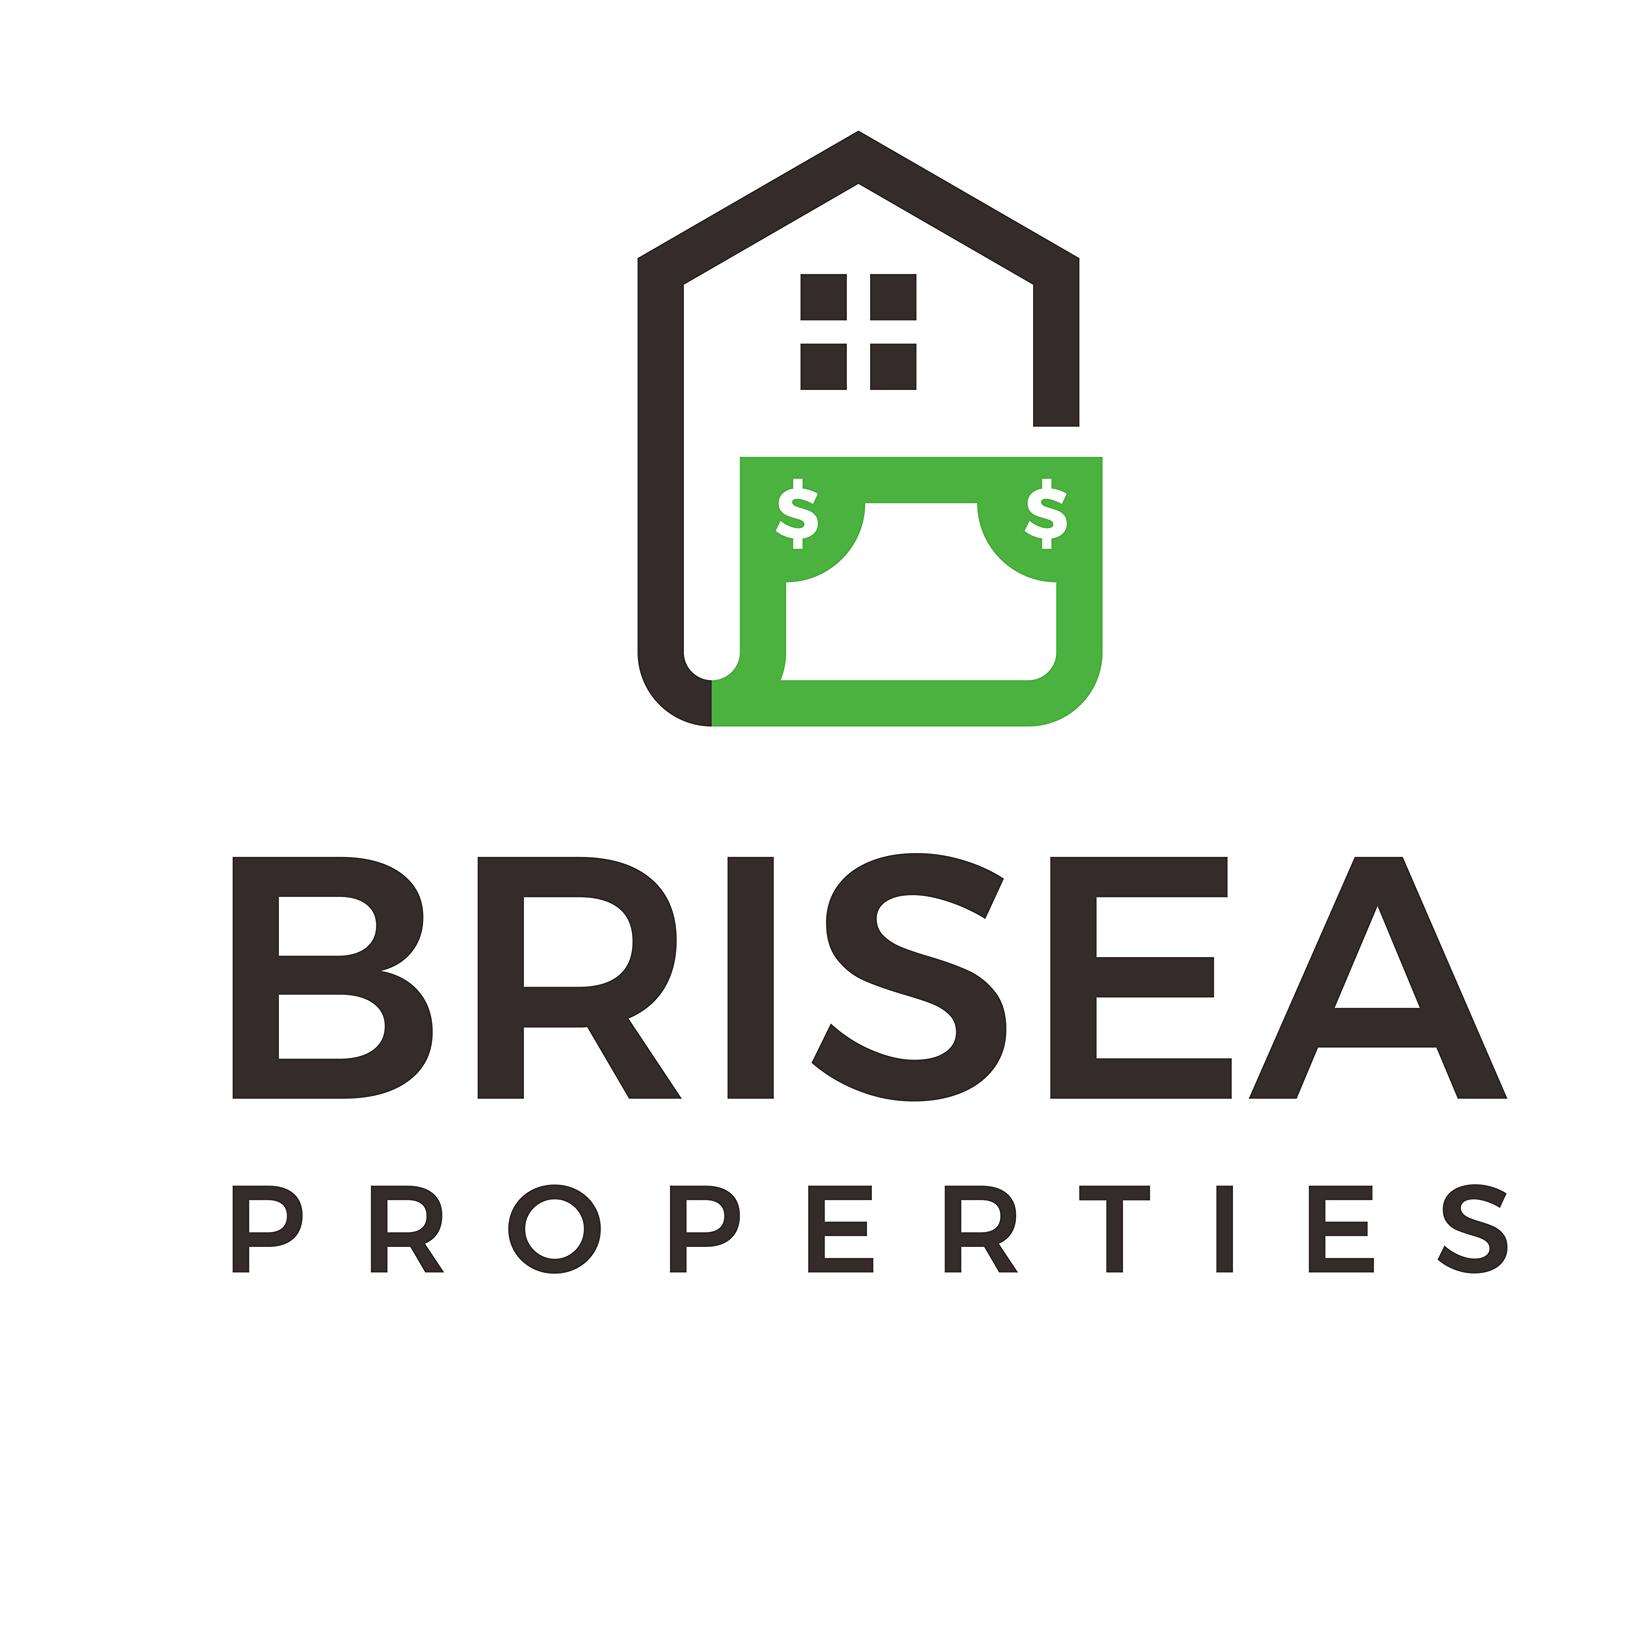 Brisea Properties | 2257 N. Loop 336 W. #140 PMT 104 Conroe, TX 77304 | Phone: (936) 228-9273